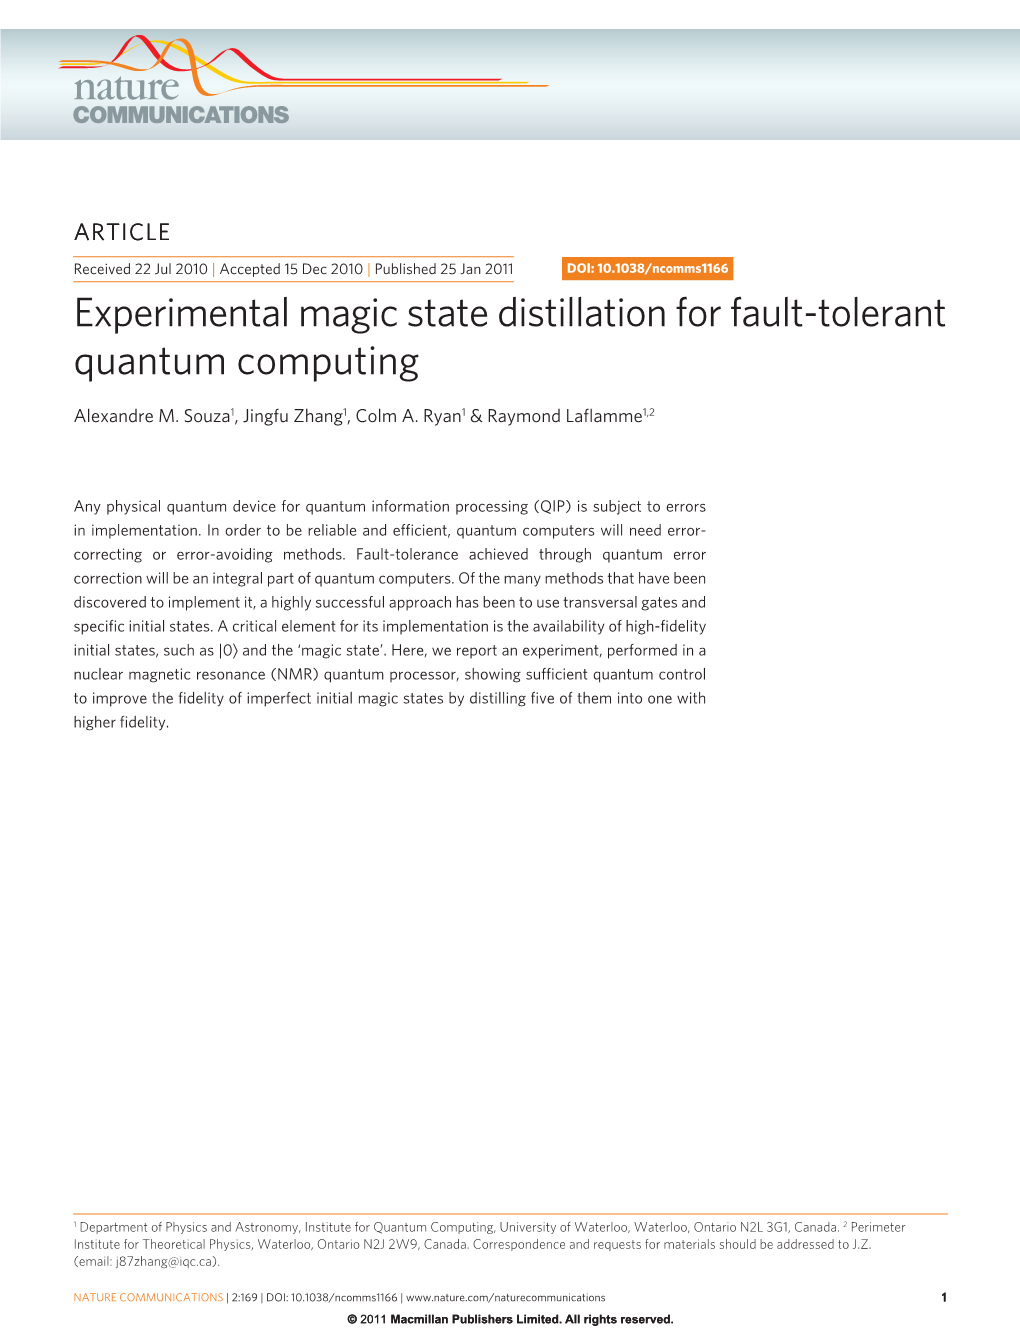 Experimental Magic State Distillation for Fault-Tolerant Quantum Computing